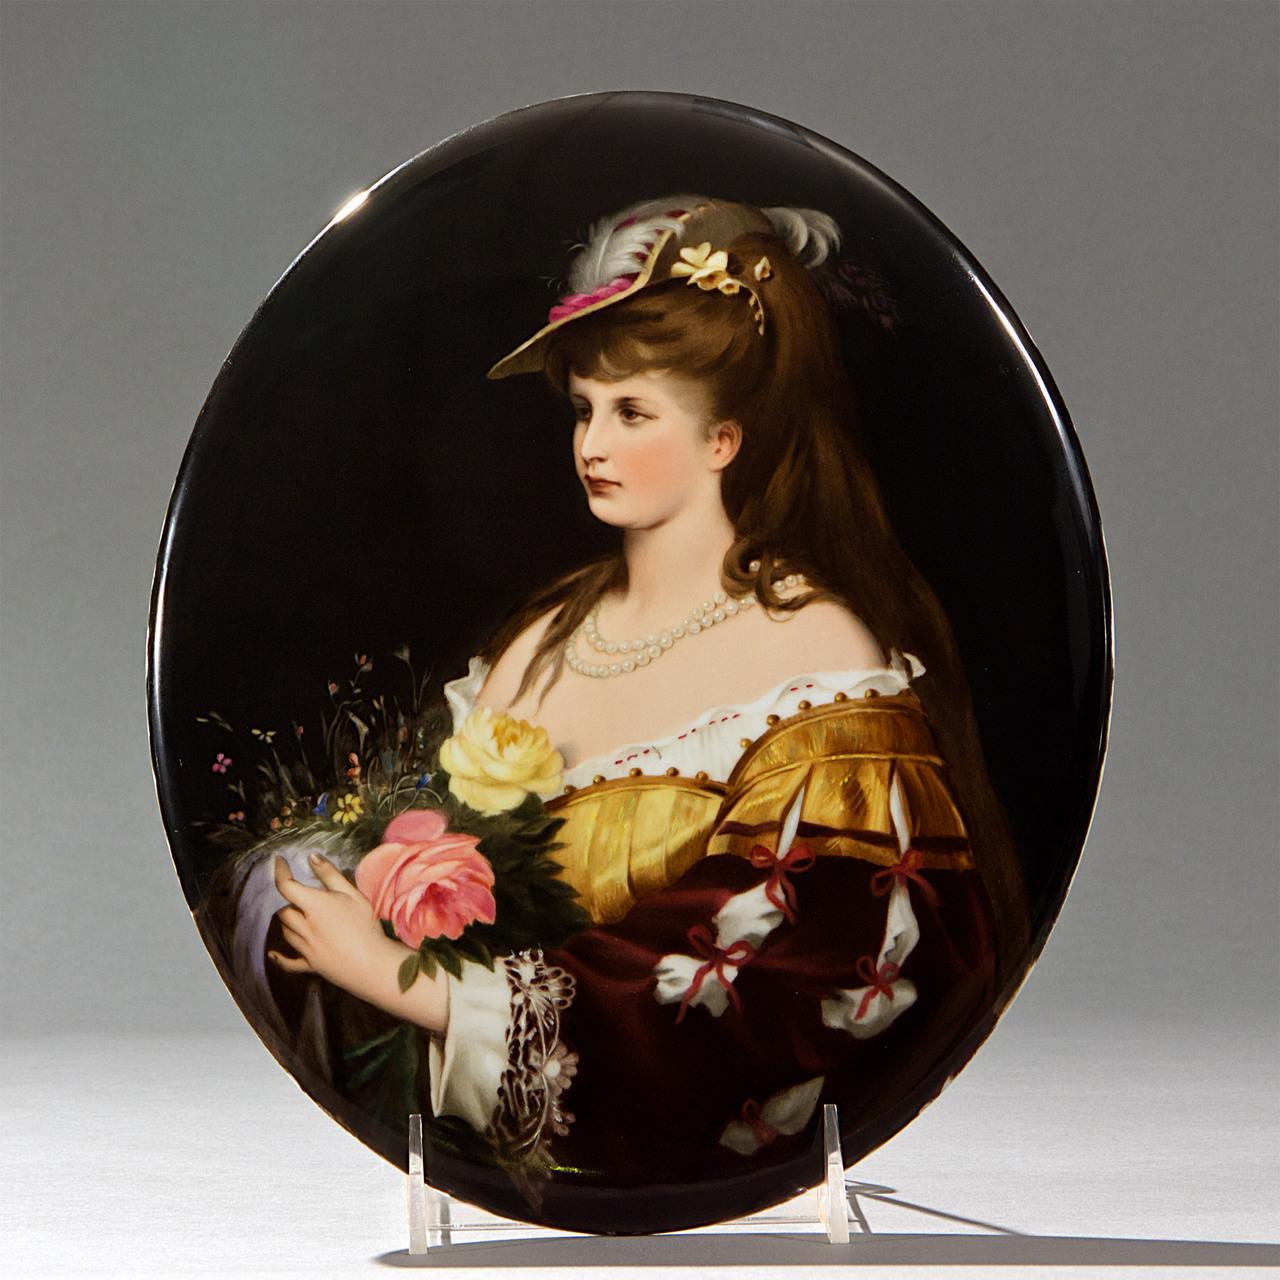 Königliche Porzellan-Manufaktur (KPM) Portrait Painting - KPM Oval Plaque depicting a Beautiful Lady with a Hat